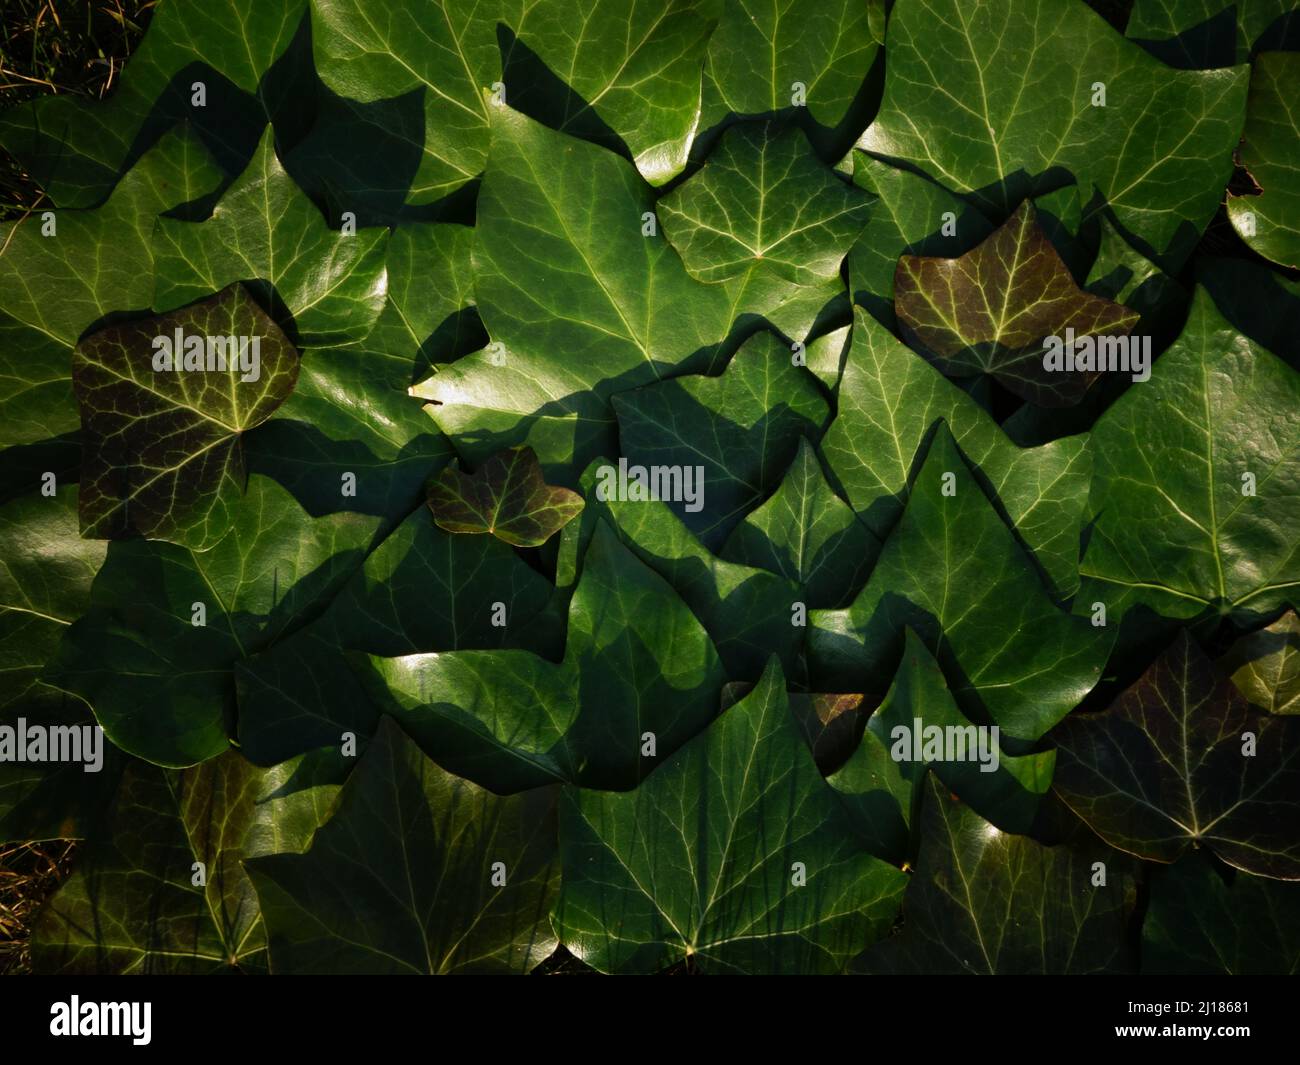 Ruhiger Hintergrund von Nuancen von grünem Efeu Laub oder Efeu Blätter perfekt als Hintergrund oder Vorlage für eine Karte, eine Website oder als sehr schöner Bildschirmschoner. Stockfoto